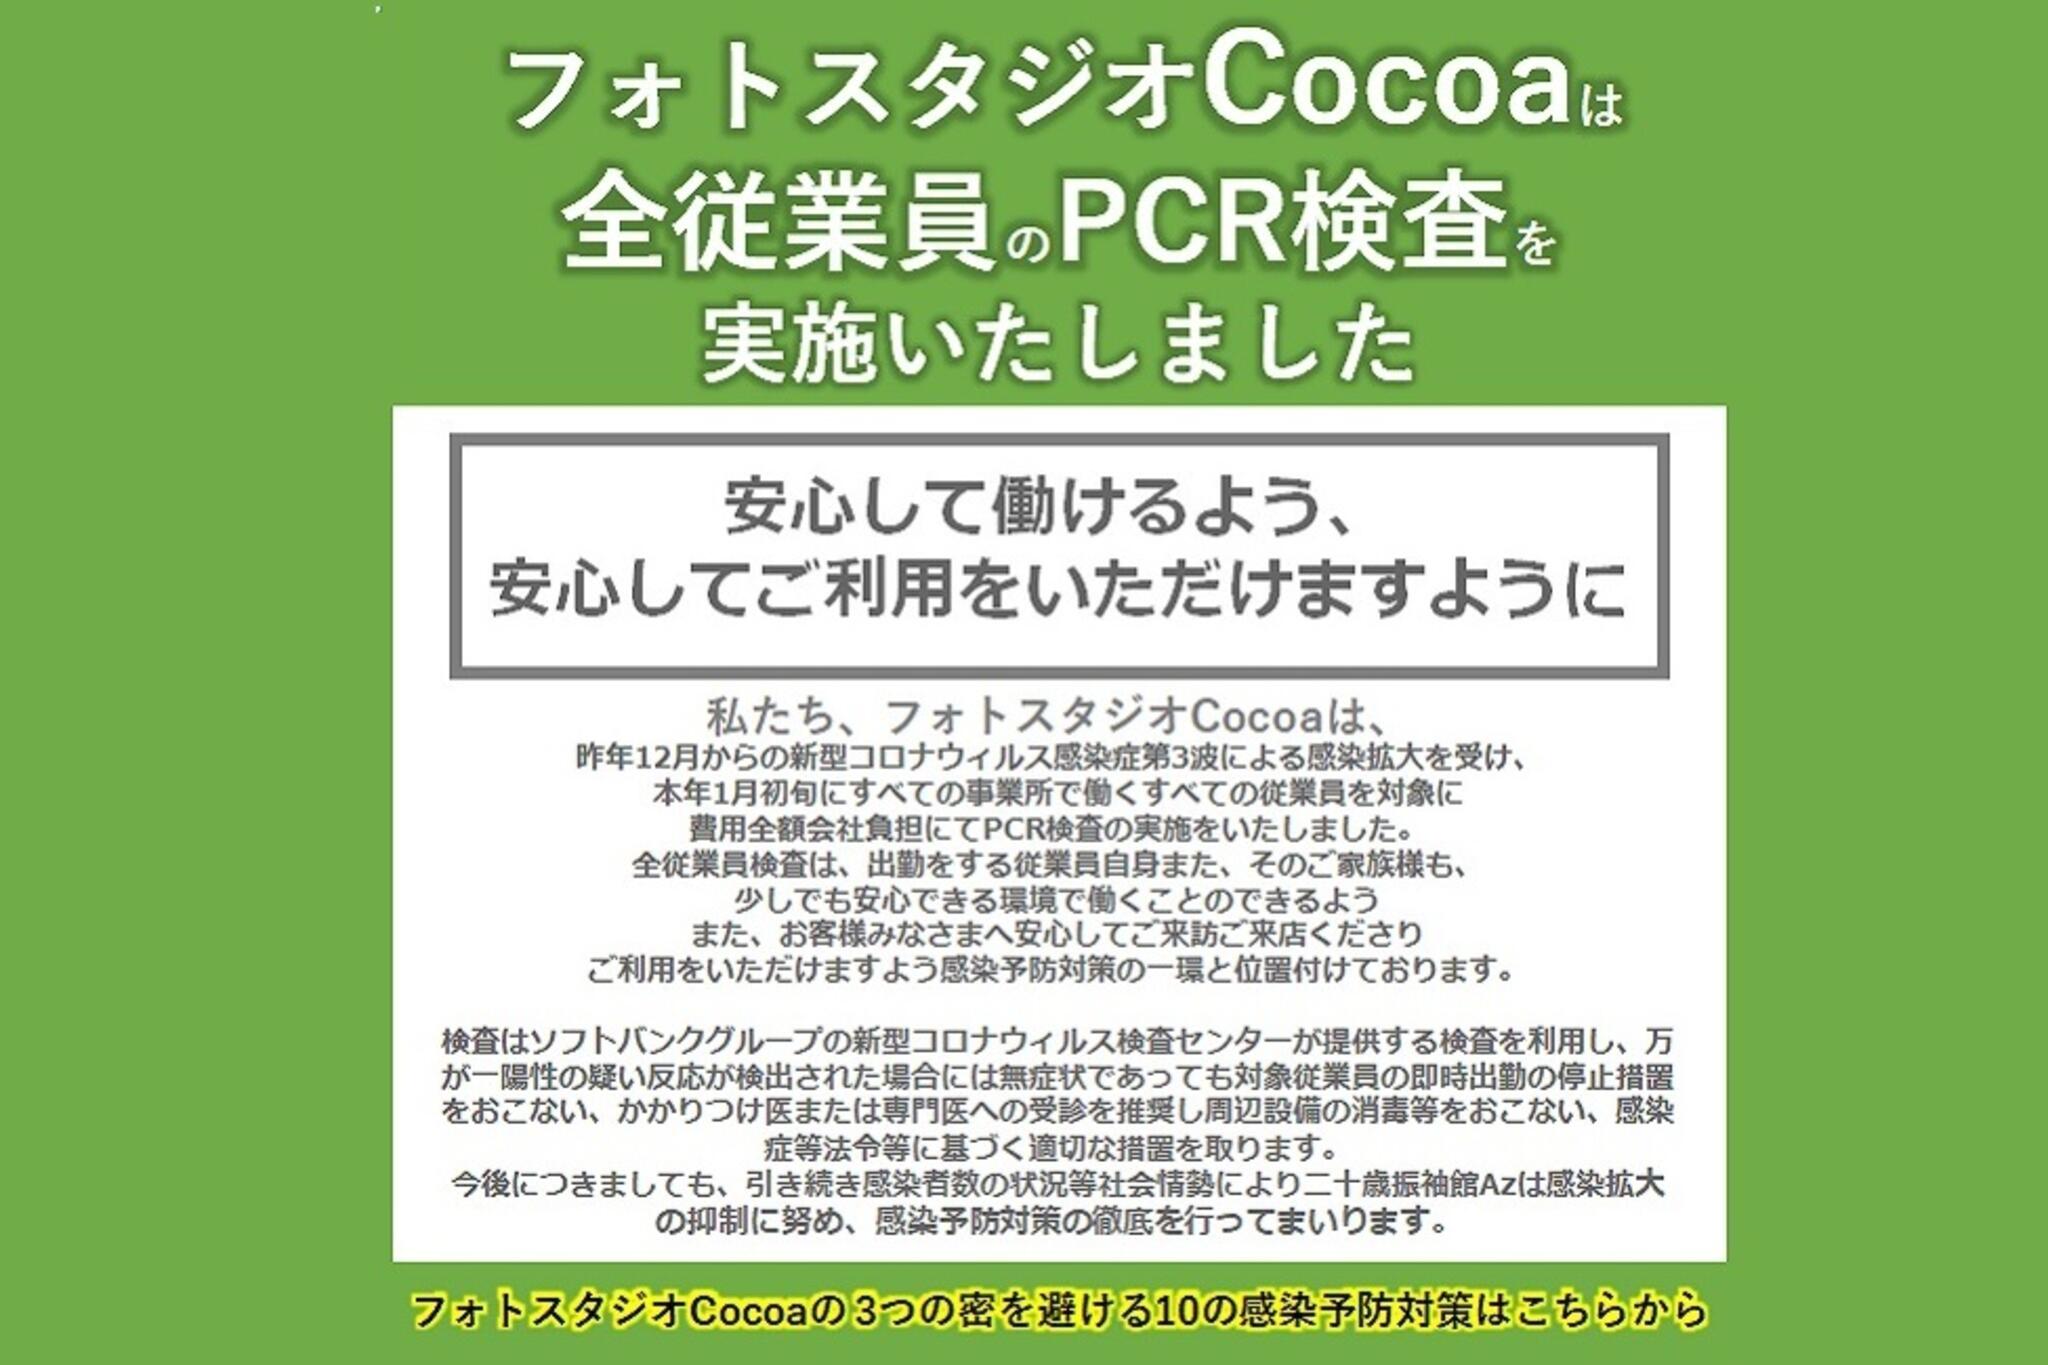 フォトスタジオCocoa横浜港北店からのお知らせ(全従業員にPCR検査の実施をいたしました。 安心して働けるよう、安心してご利用をいただけますように)に関する写真